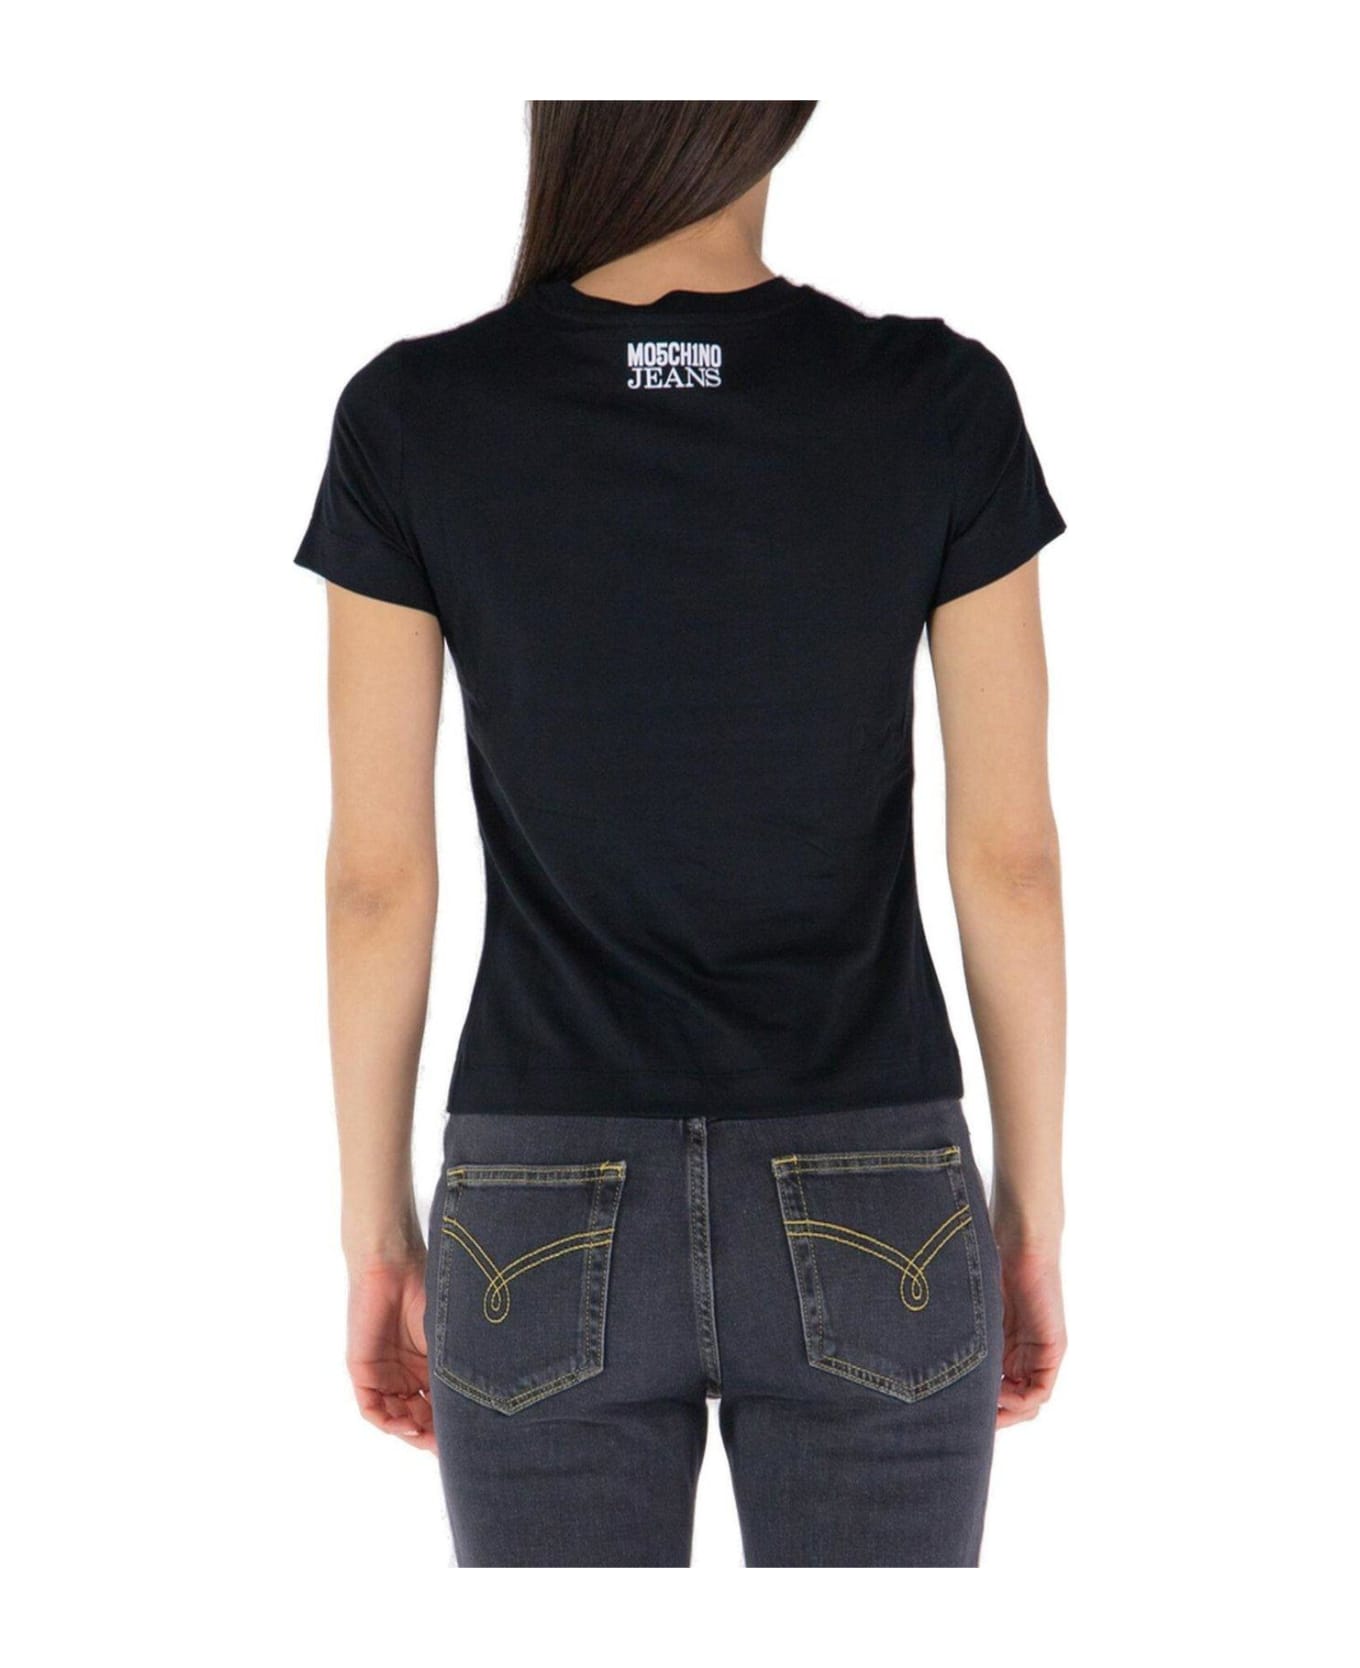 M05CH1N0 Jeans Jeans Peace Sign-motif Crewneck T-shirt - Black